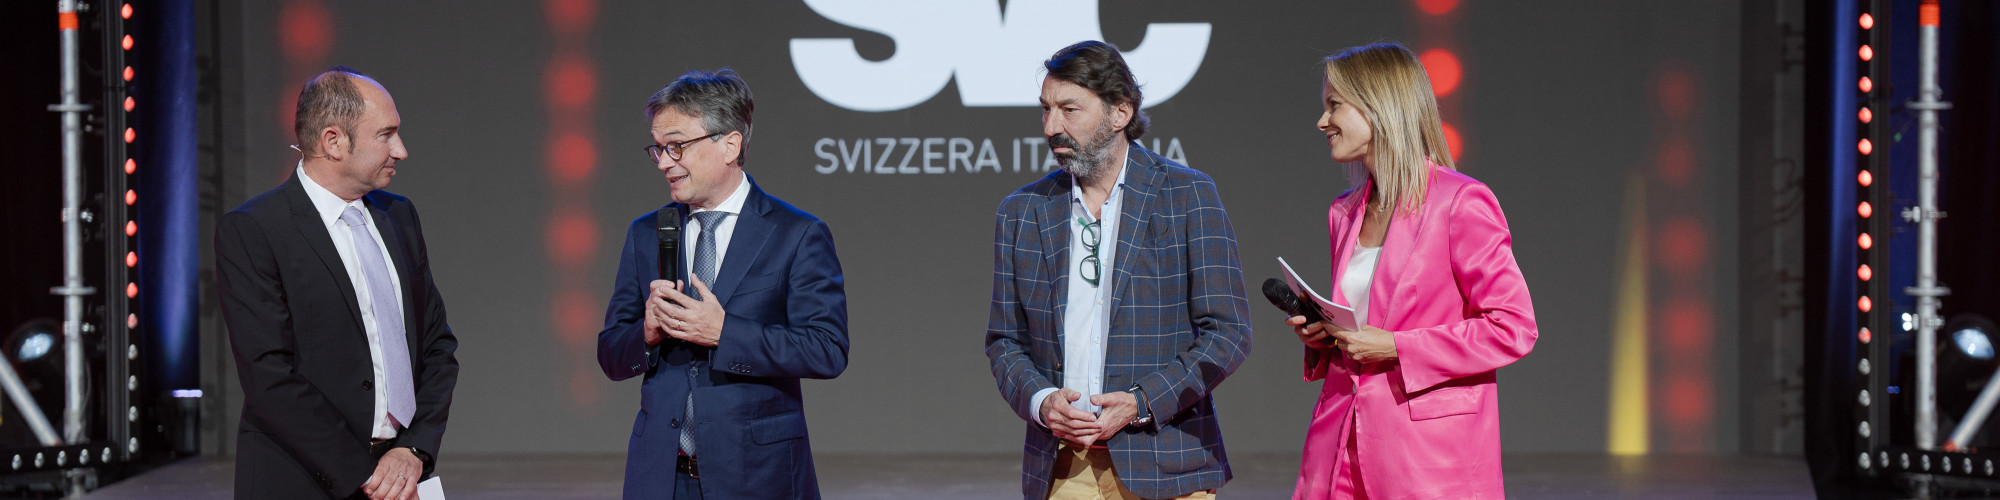 Prix SVC Svizzera italiana